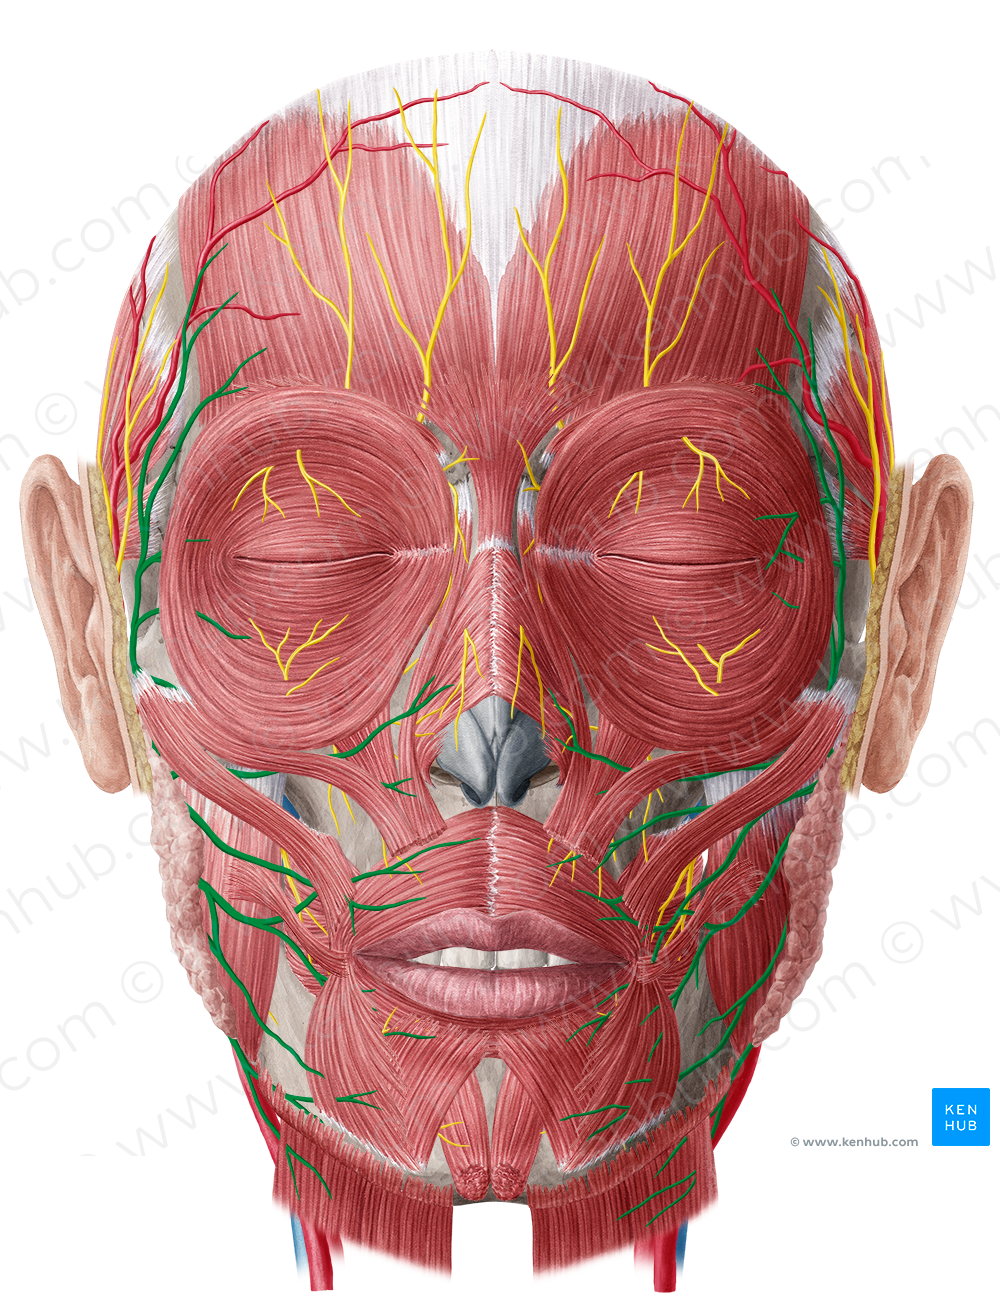 Facial nerve (#6410)